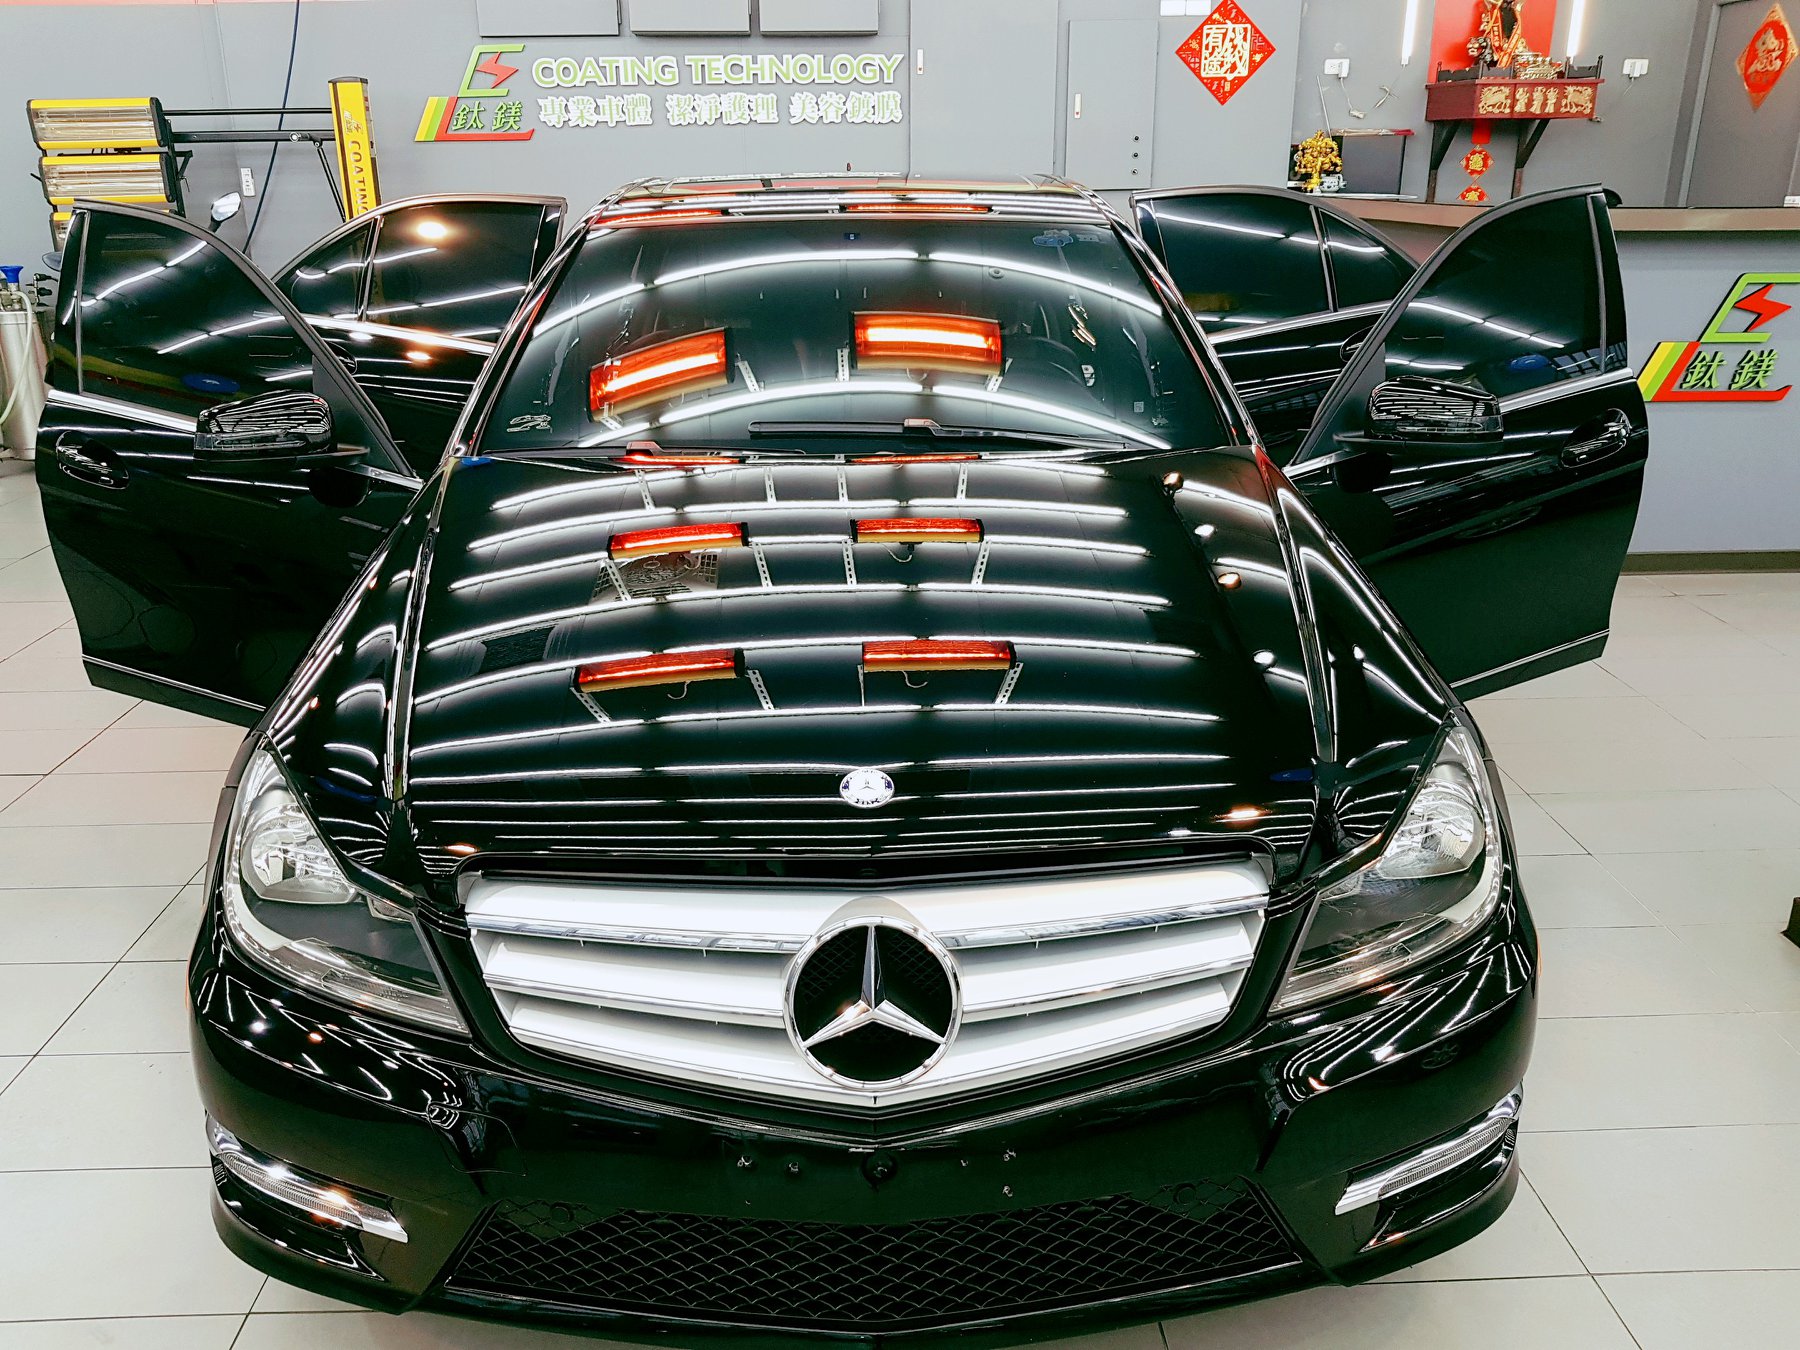 汽車鍍膜可以保護汽車的漆面，使汽車漆面更耐磨，抵抗環境因素的侵蝕。